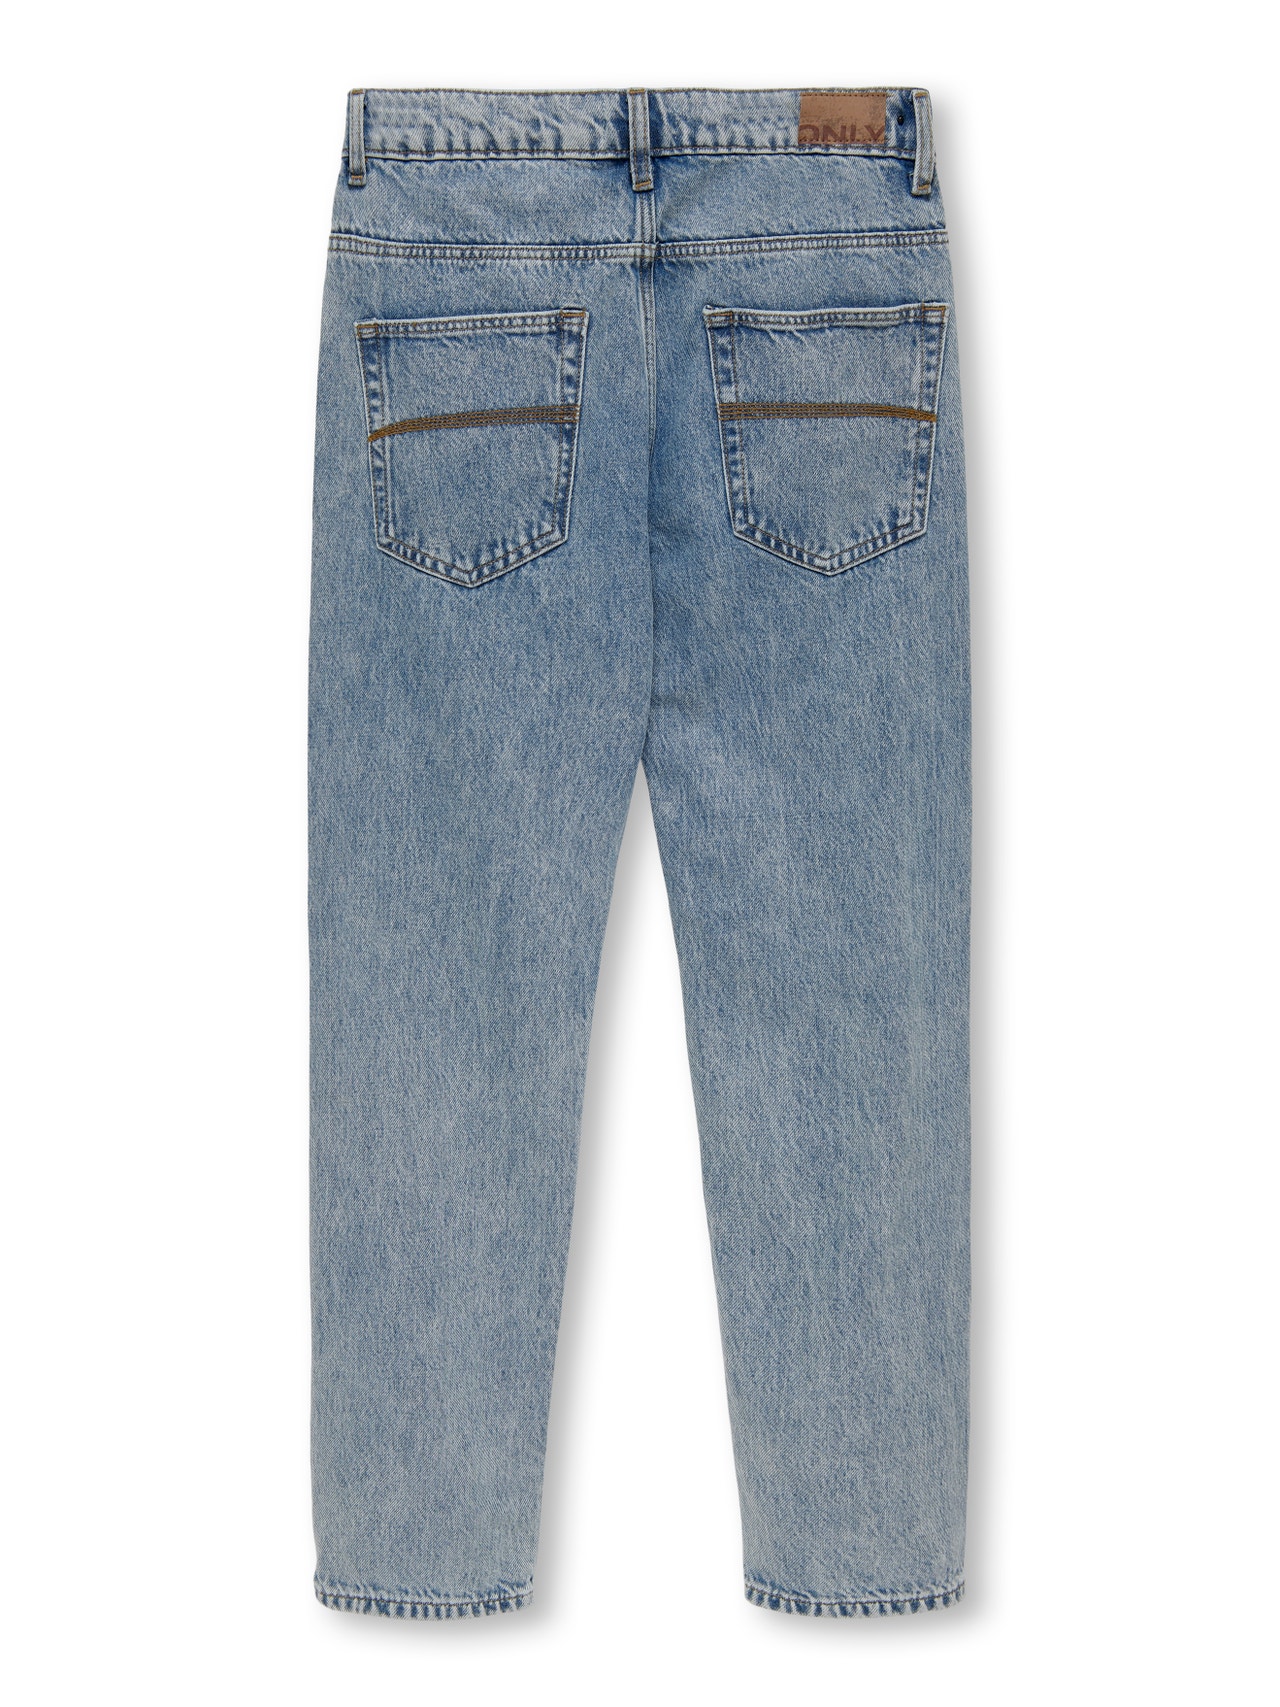 ONLY Loose Fit Jeans -Light Blue Denim - 15265530